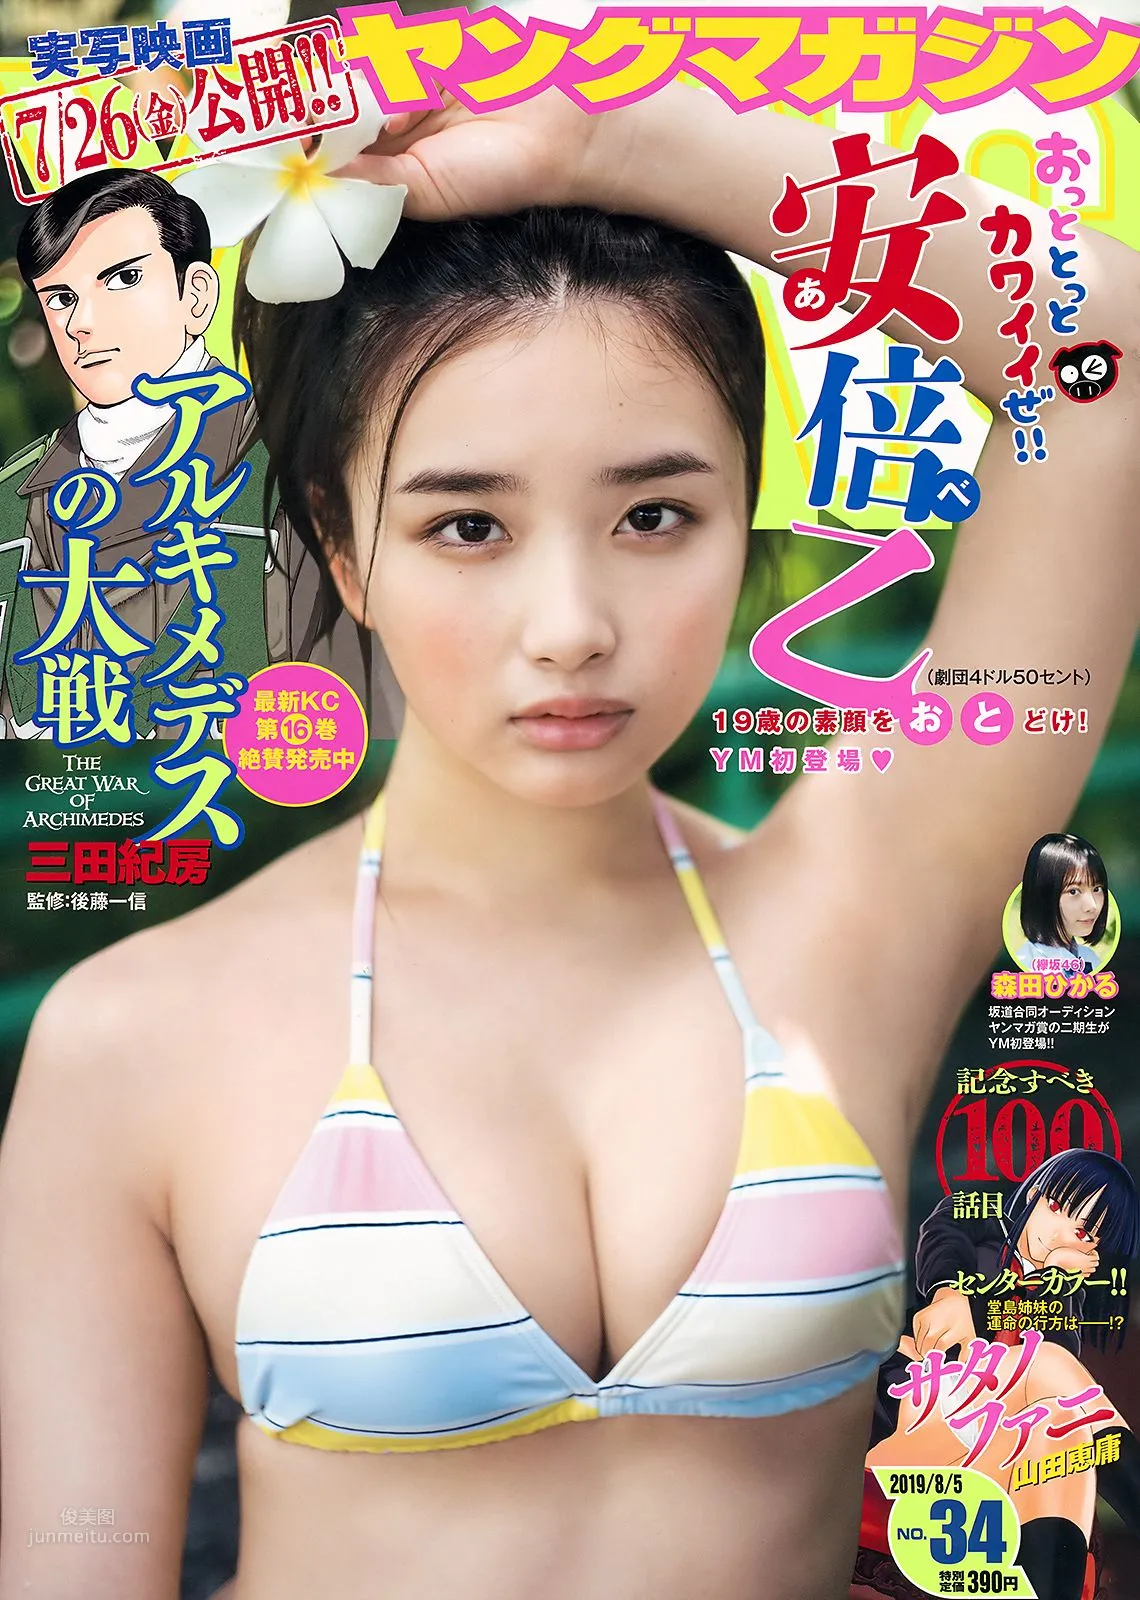 安倍乙, Abe Oto - Young Magazine, 2019.08.05_0